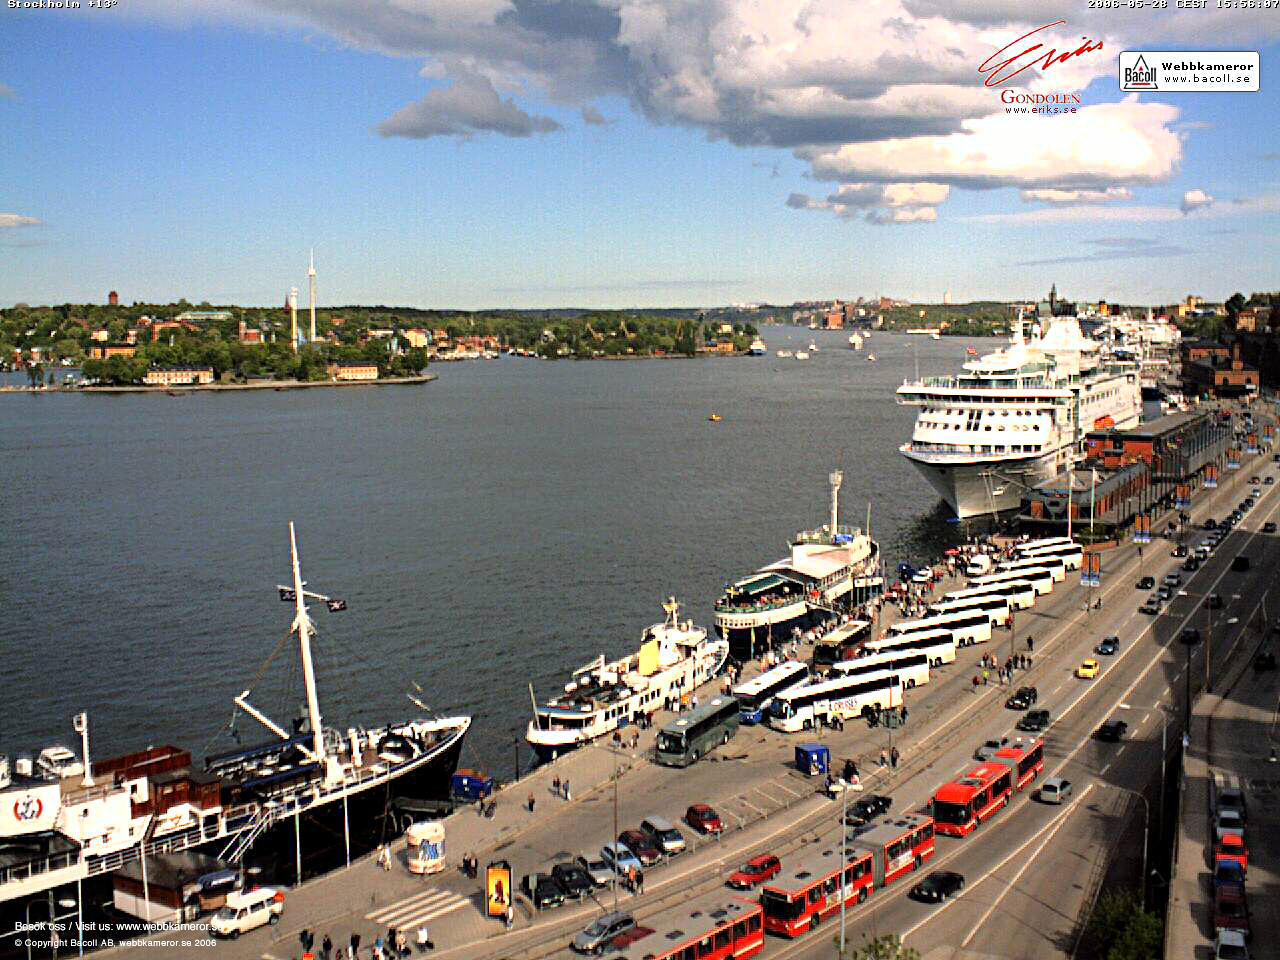 Webbkamera, Stockholm, webcam, väder, weather